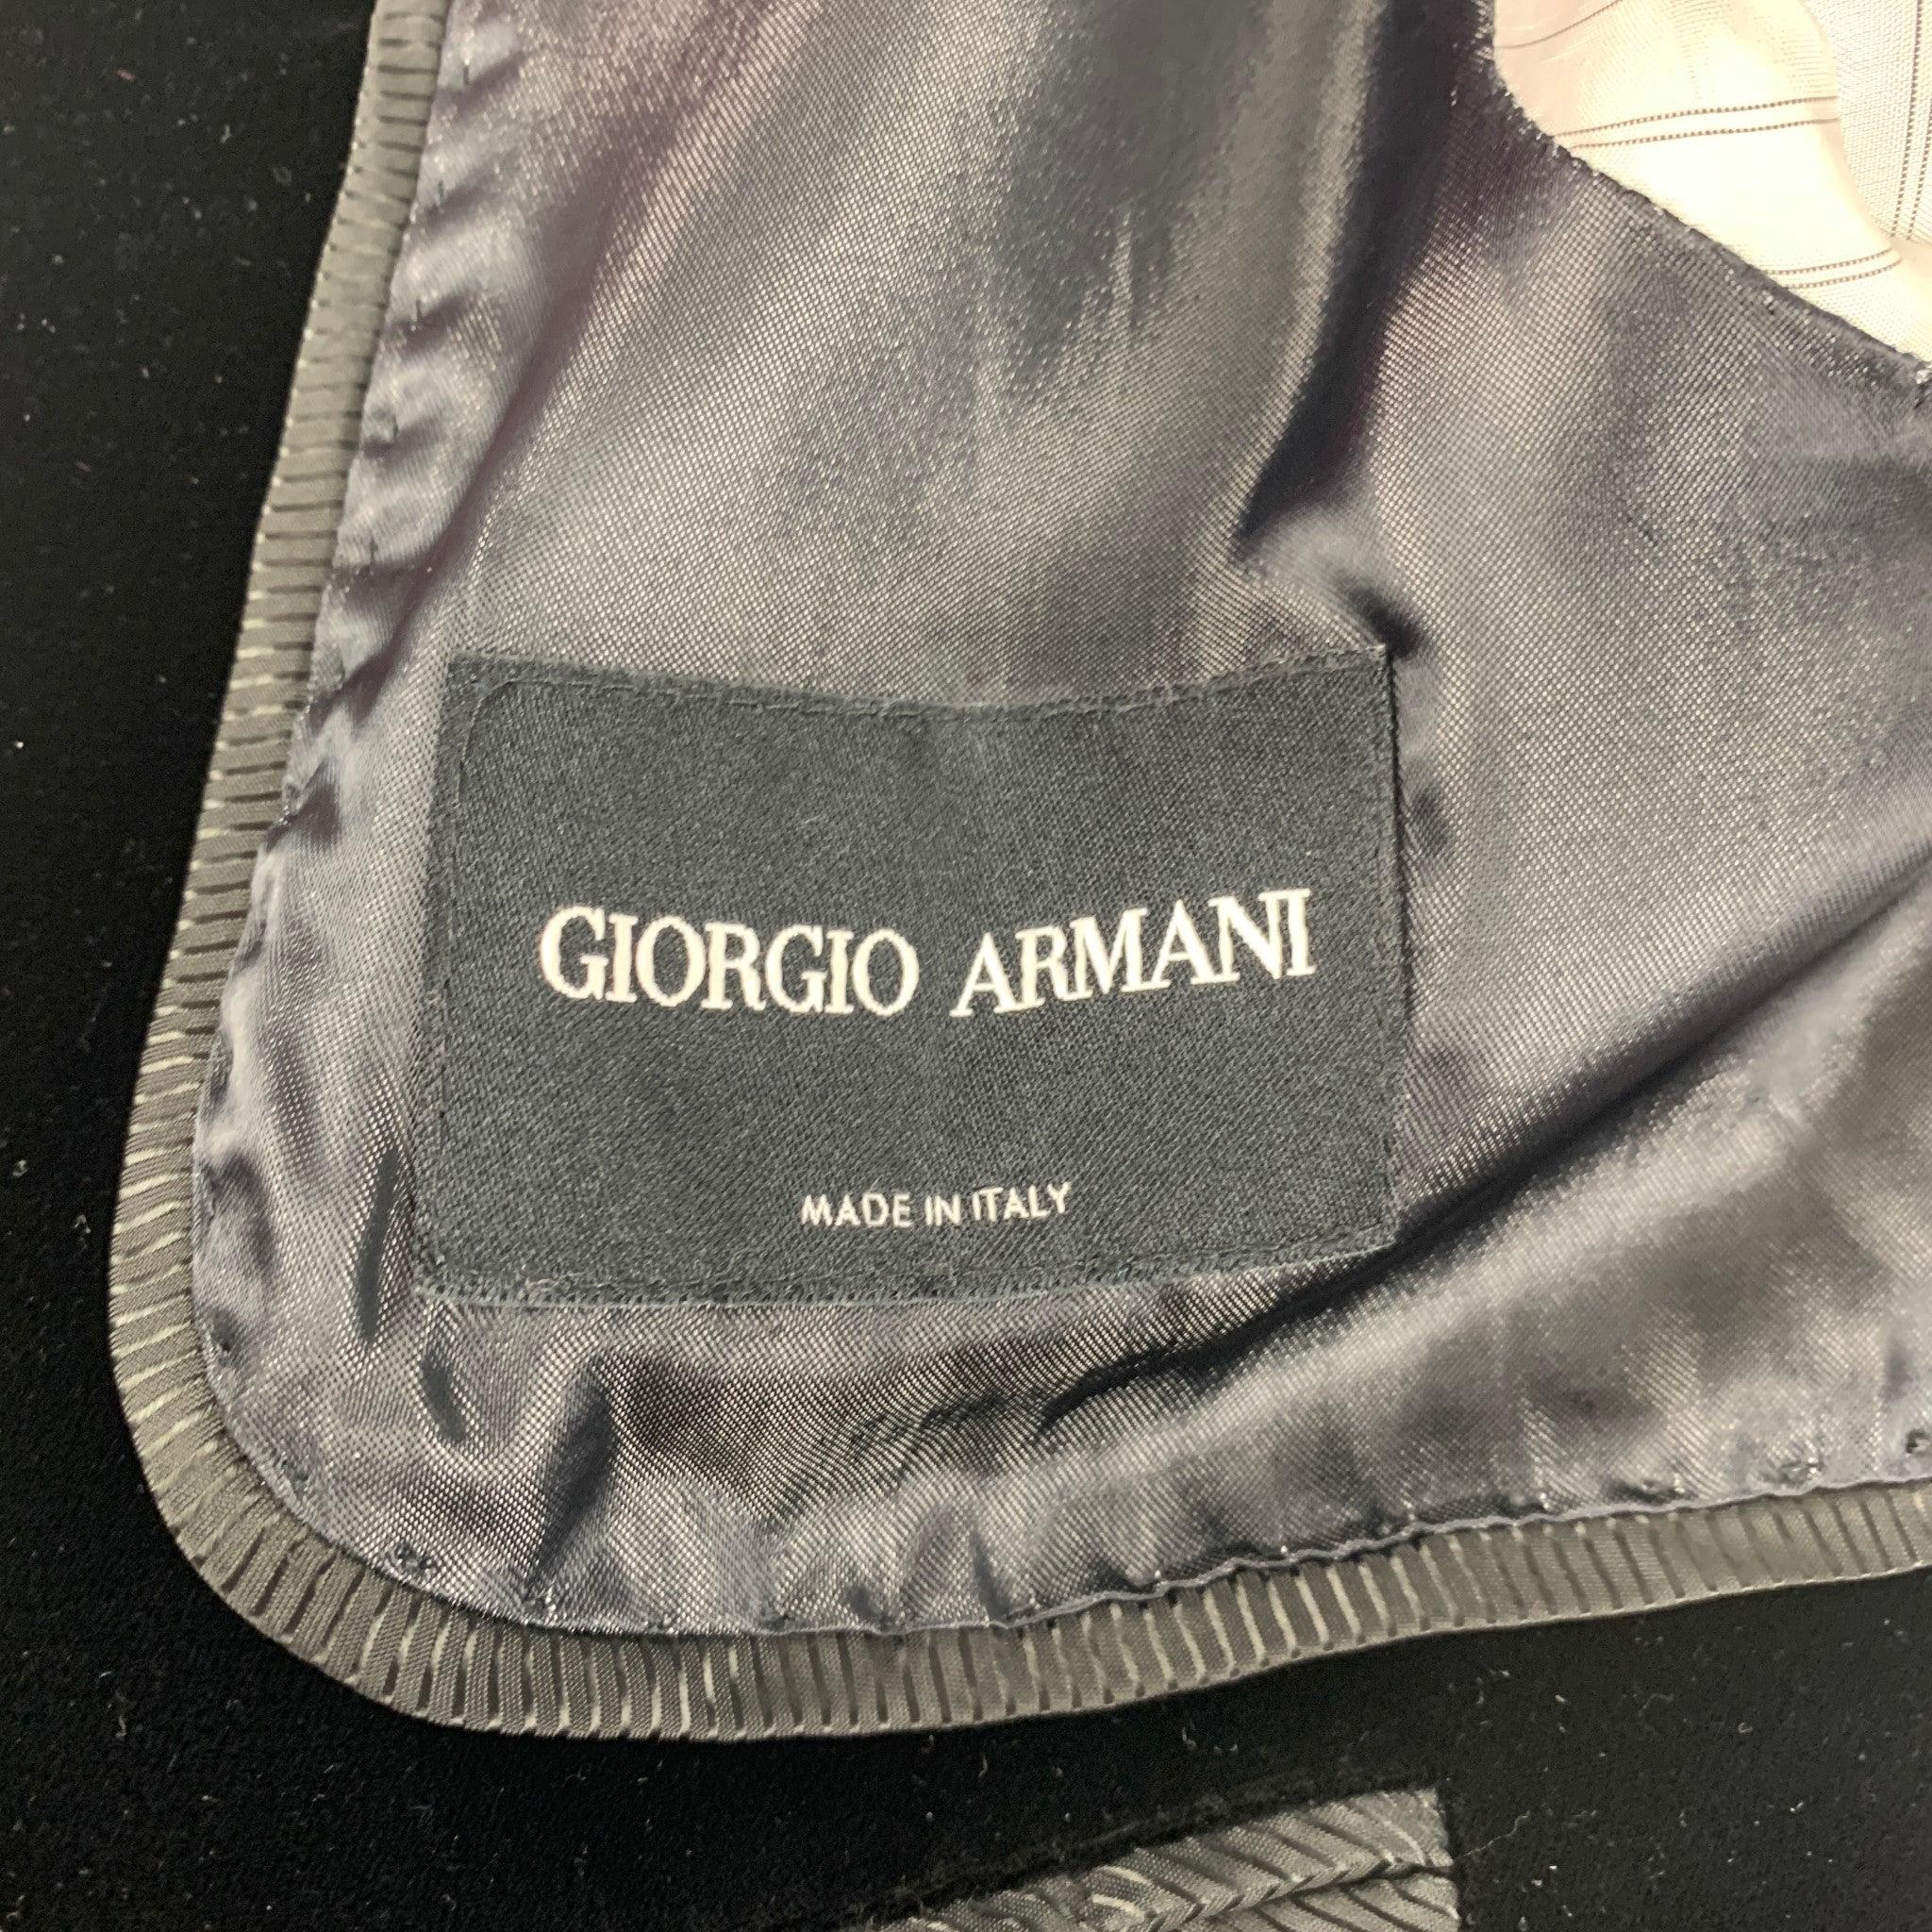 GIORGIO ARMANI Size 44 Indigo Mixed Materials Cotton Cashmere Sport Coat For Sale 3